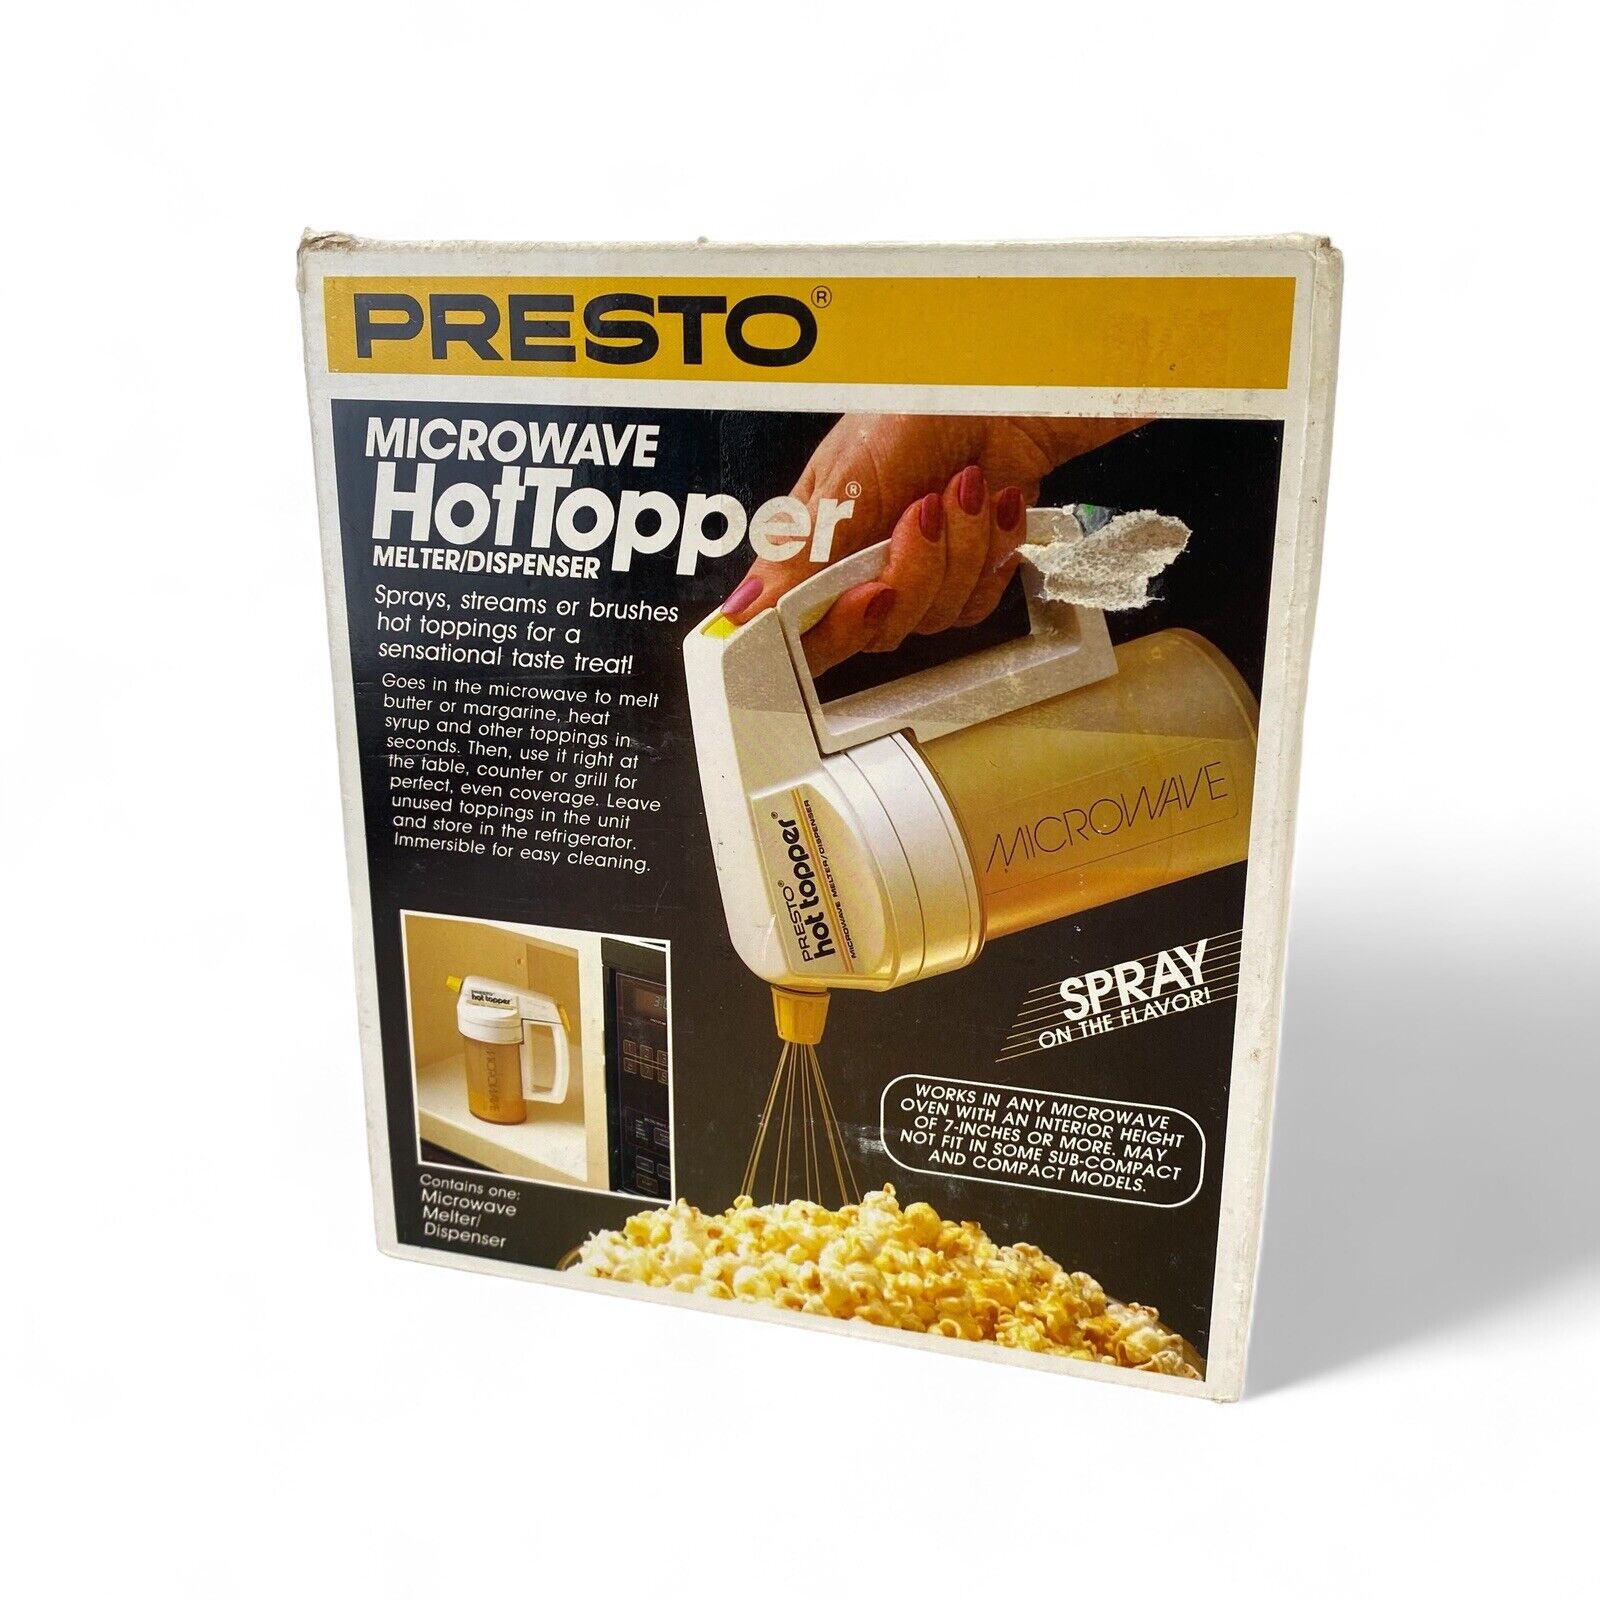 New Vintage PRESTO Microwave HotTopper Butter Melter/Dispenser 20-994 Sealed